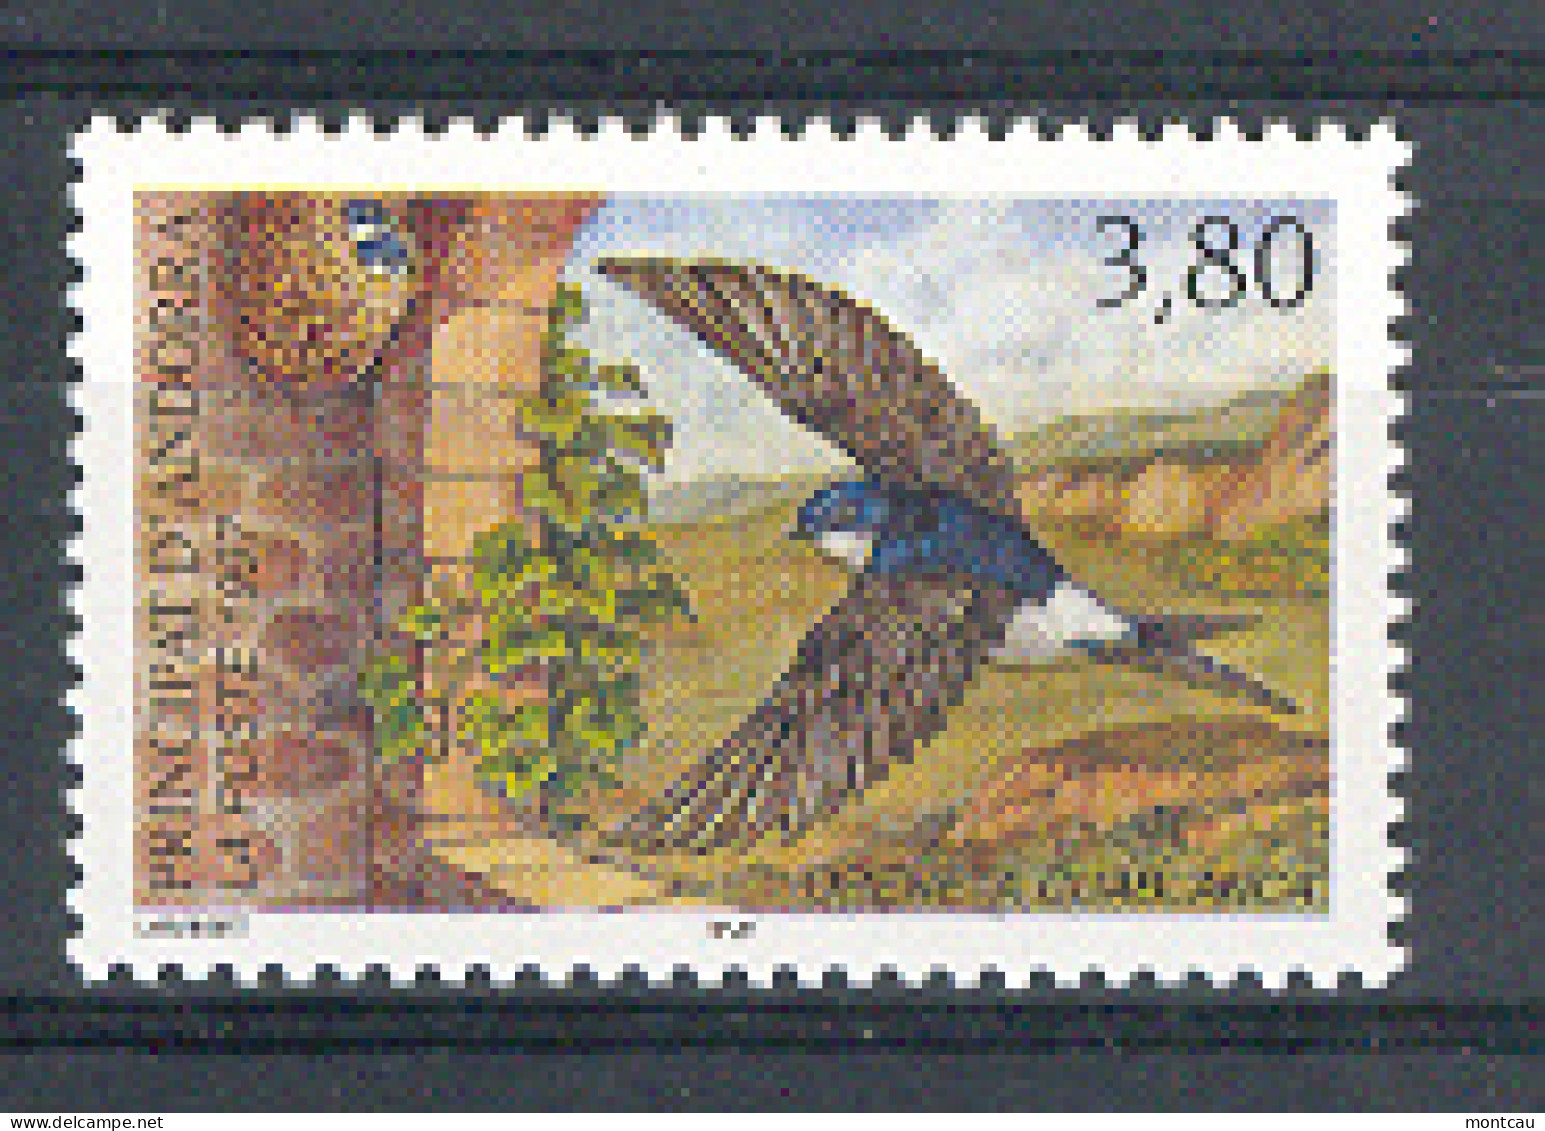 Andorra -Franc 1997 Naturaleza - Golondrina. Y=488 E=509 (**) - Zwaluwen